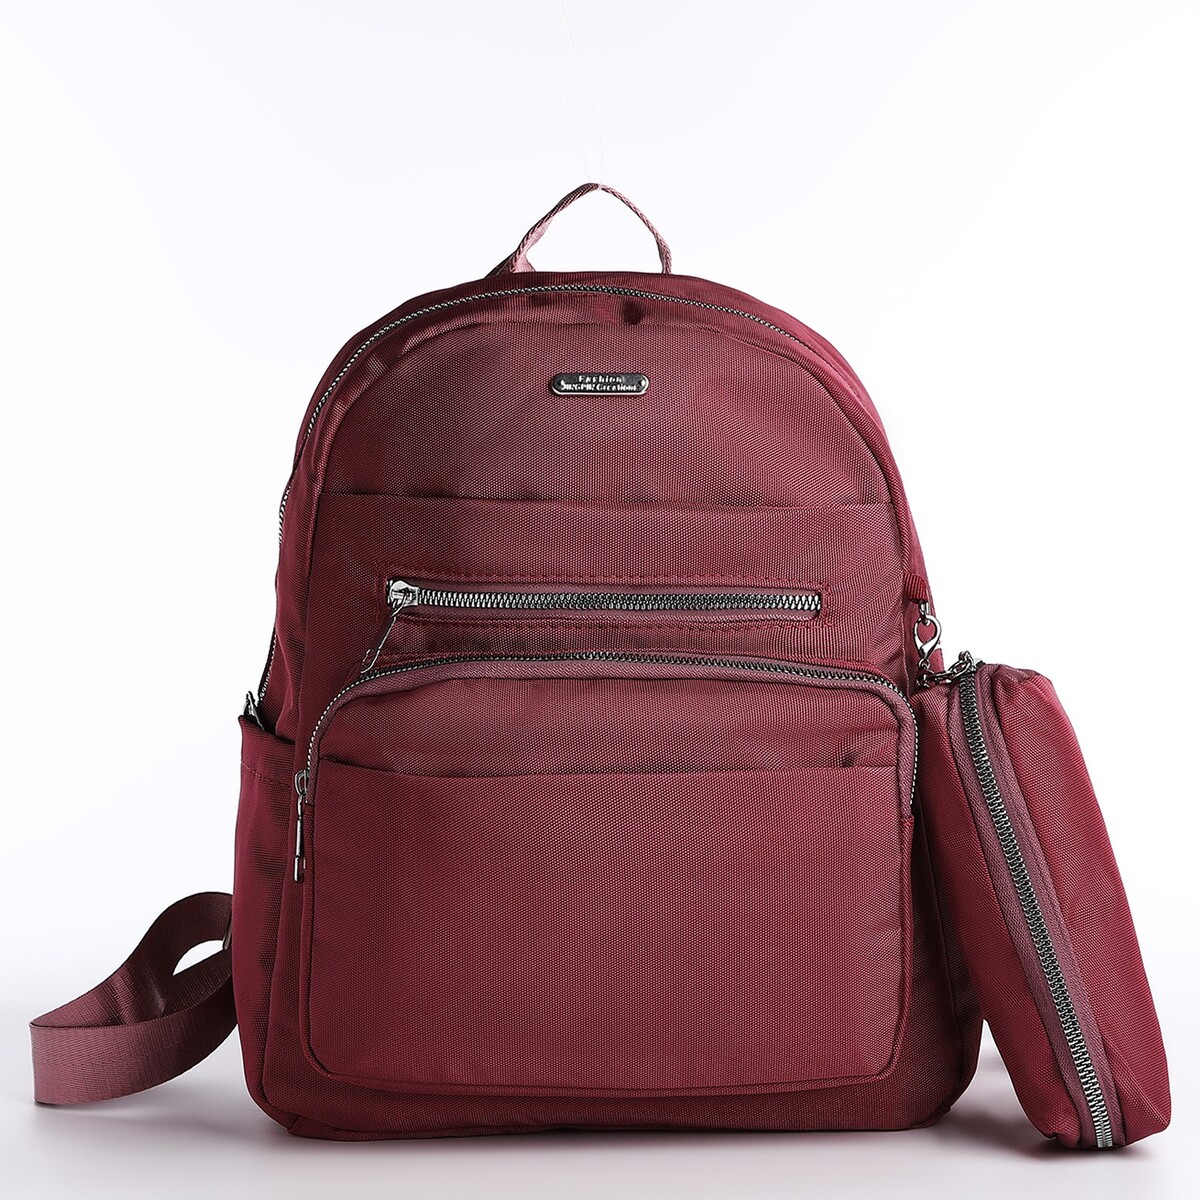 Рюкзак на молнии, 5 наружных карманов, пенал, цвет бордовый pixel bag рюкзак с led дисплеем pixel max red line бордовый